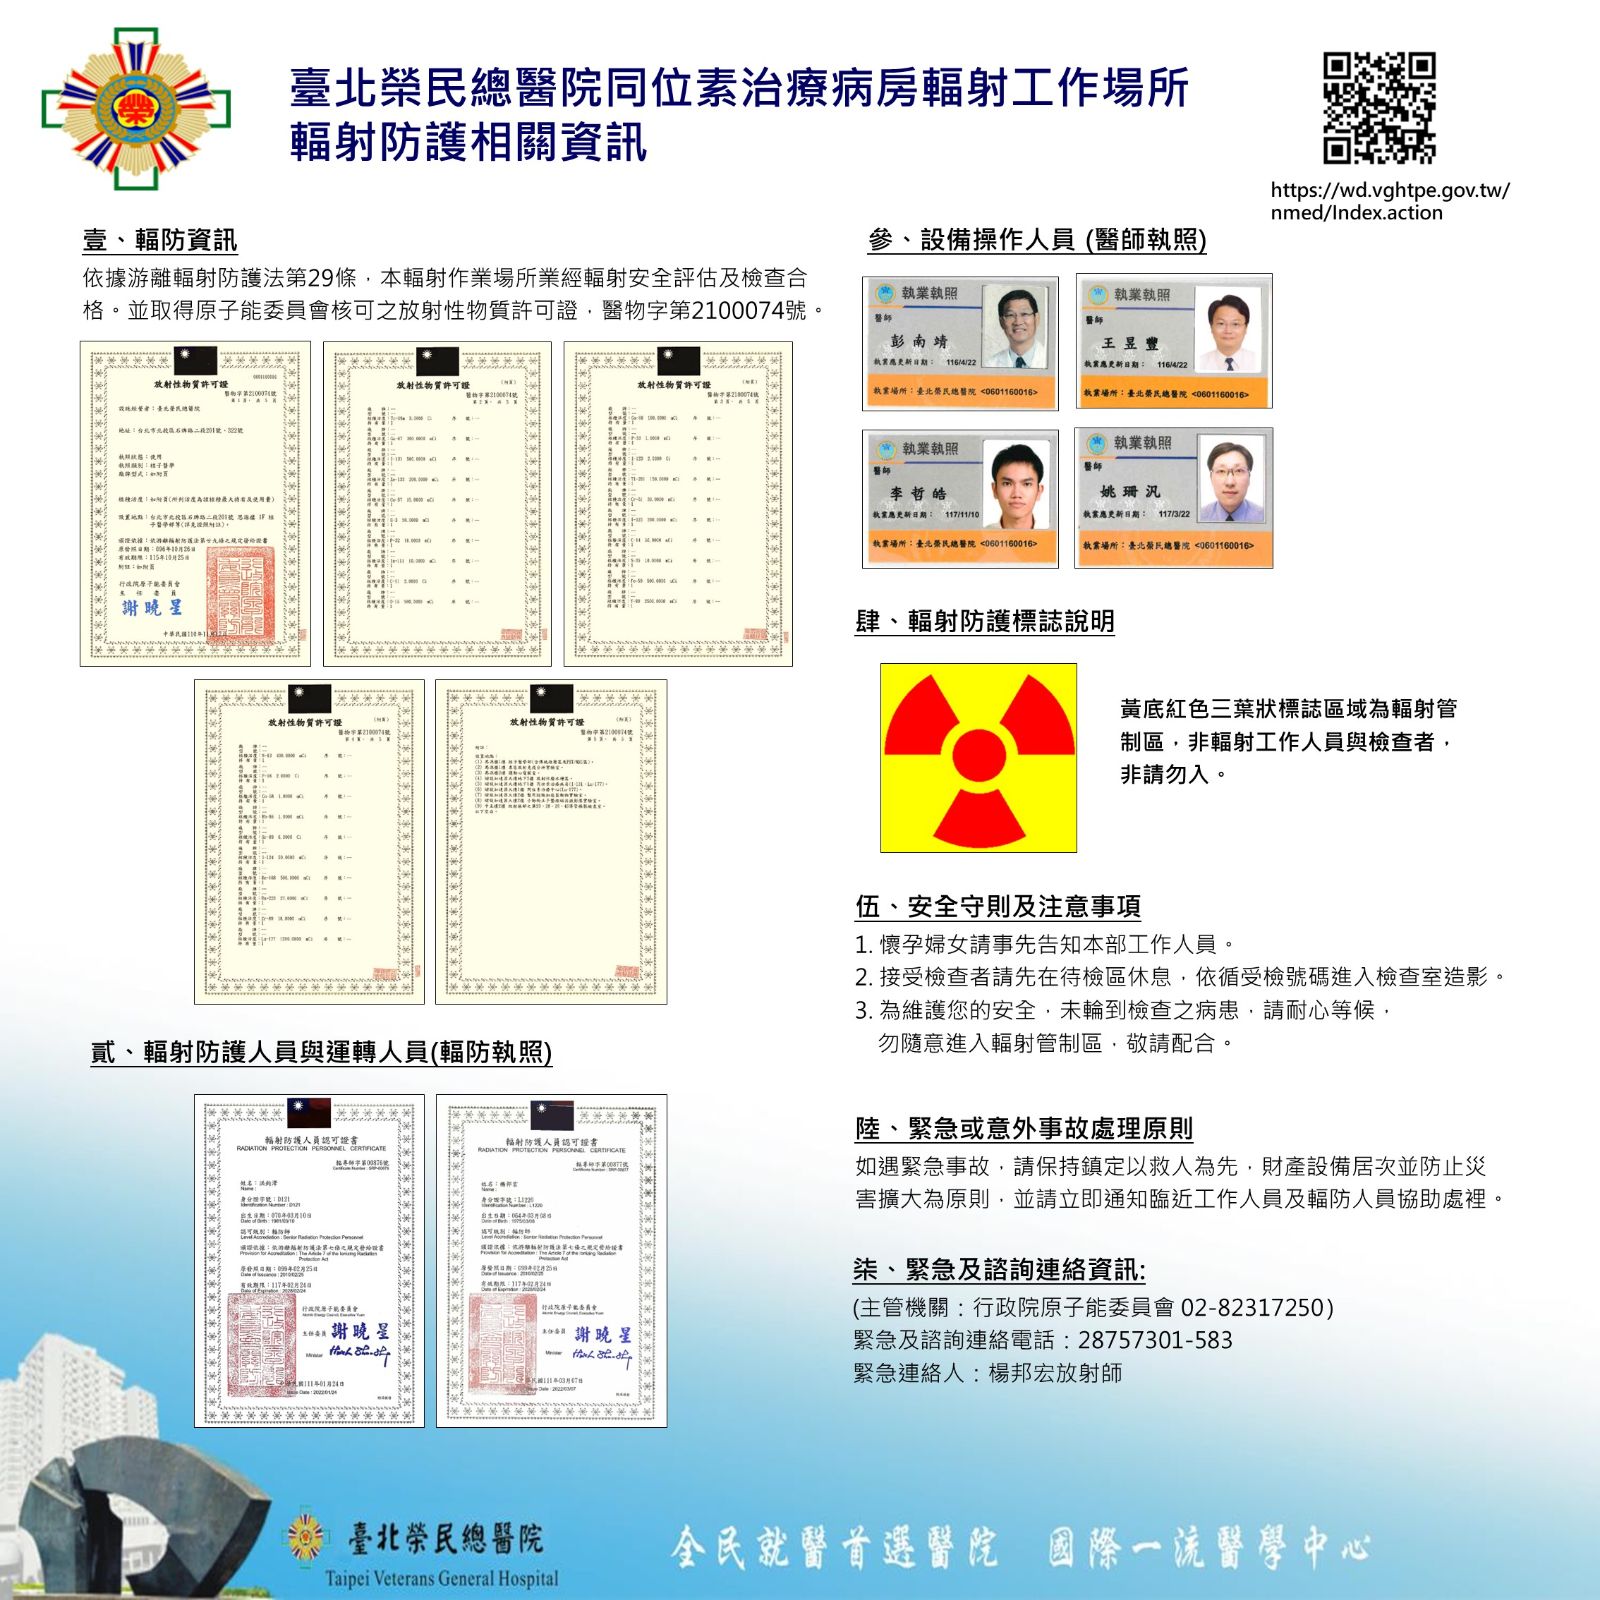 核醫輻射防護相關資訊